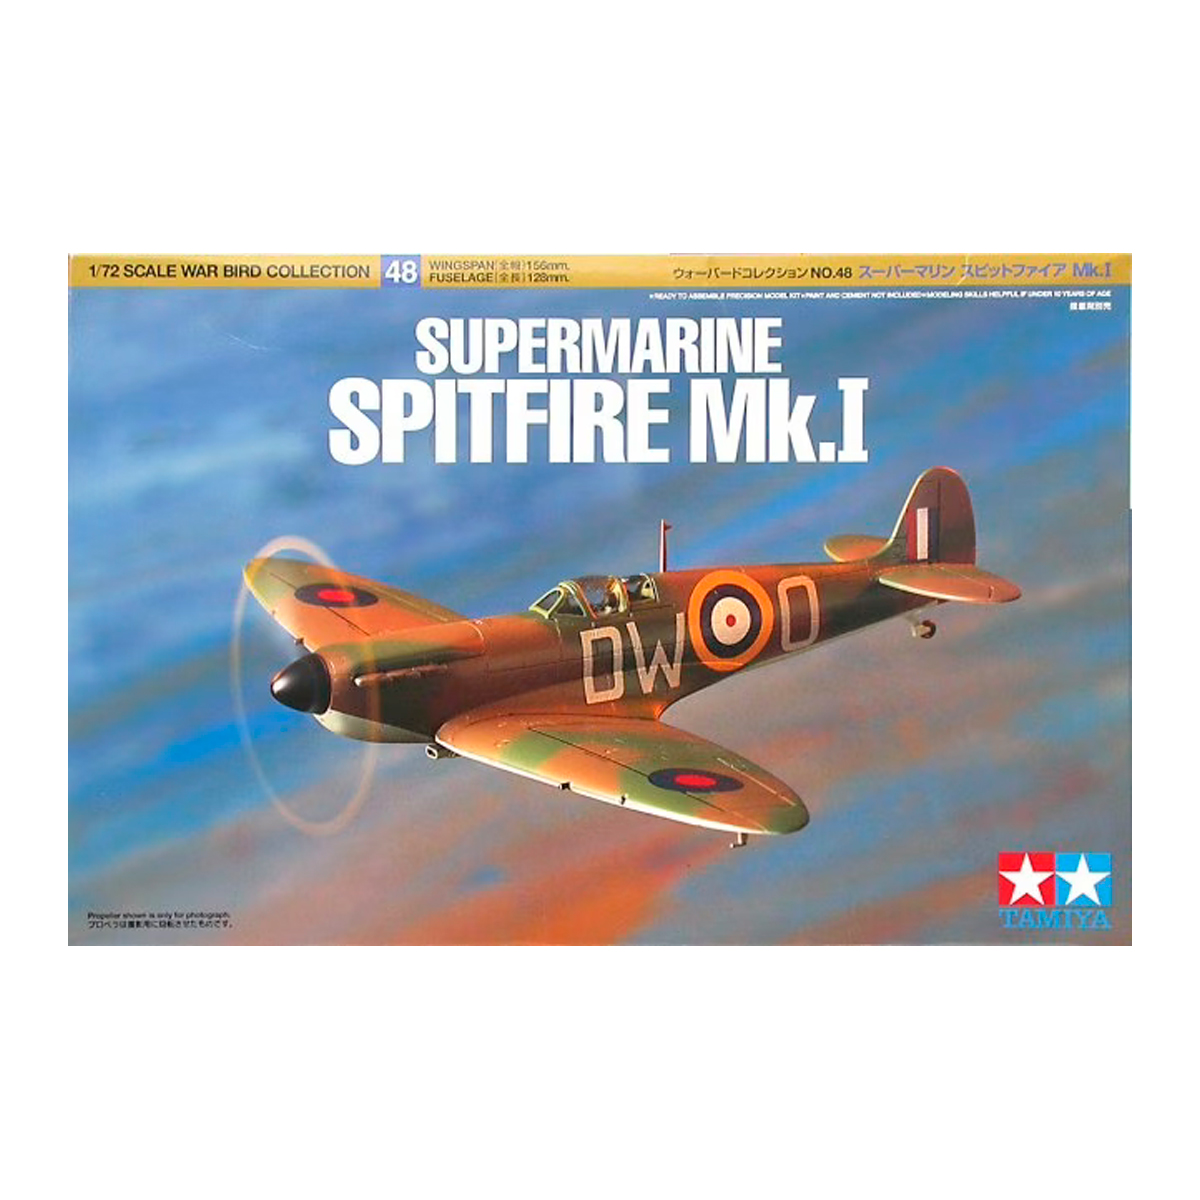 Supermarine Spitfire Mk.1 1/72